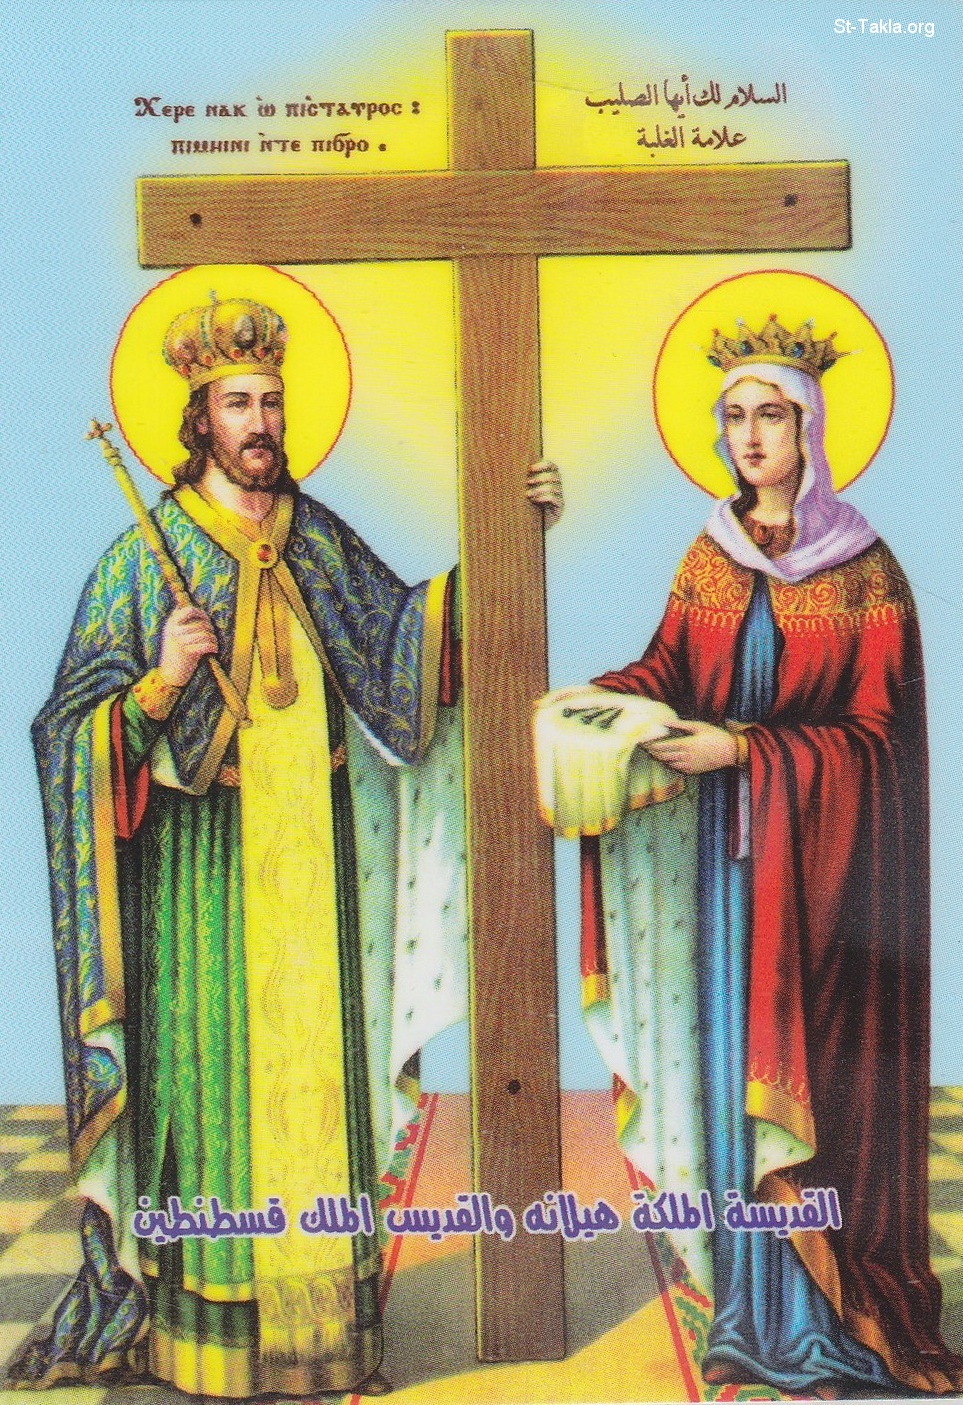 القديسة هيلانة الملكة Www-St-Takla-org--Saint-Helena-n-St-Constantine-the-Great-002